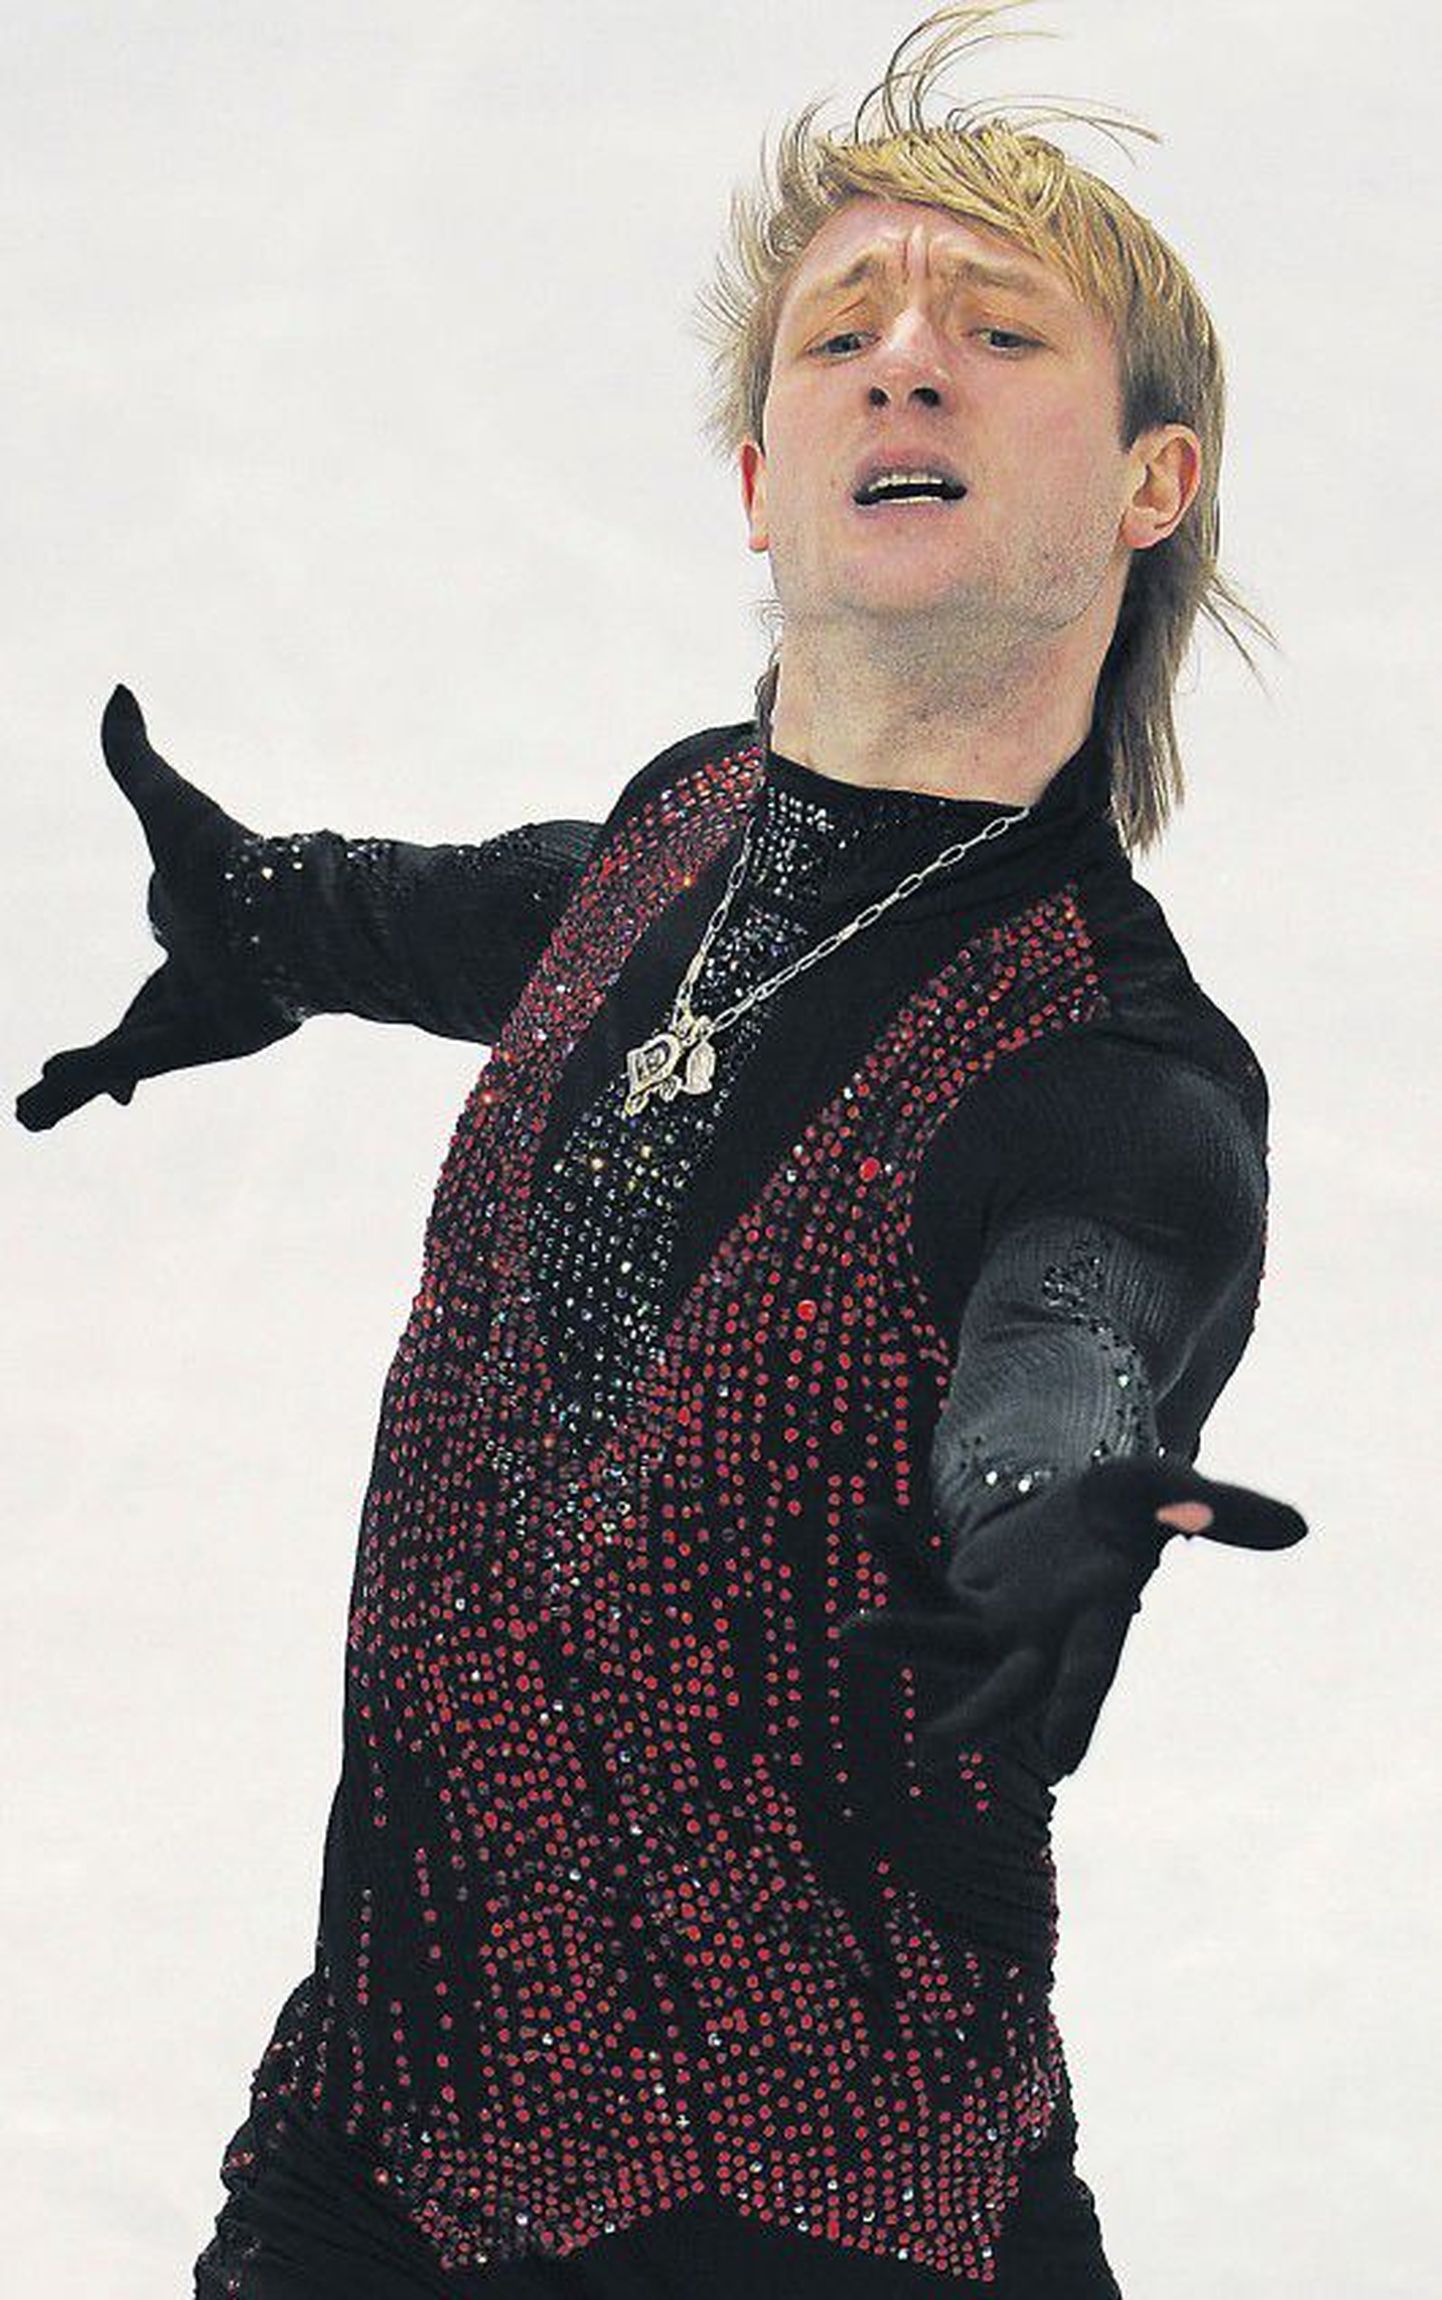 Серебряный призер зимней Олимпиады в Ванкувере Евгений Плющенко.